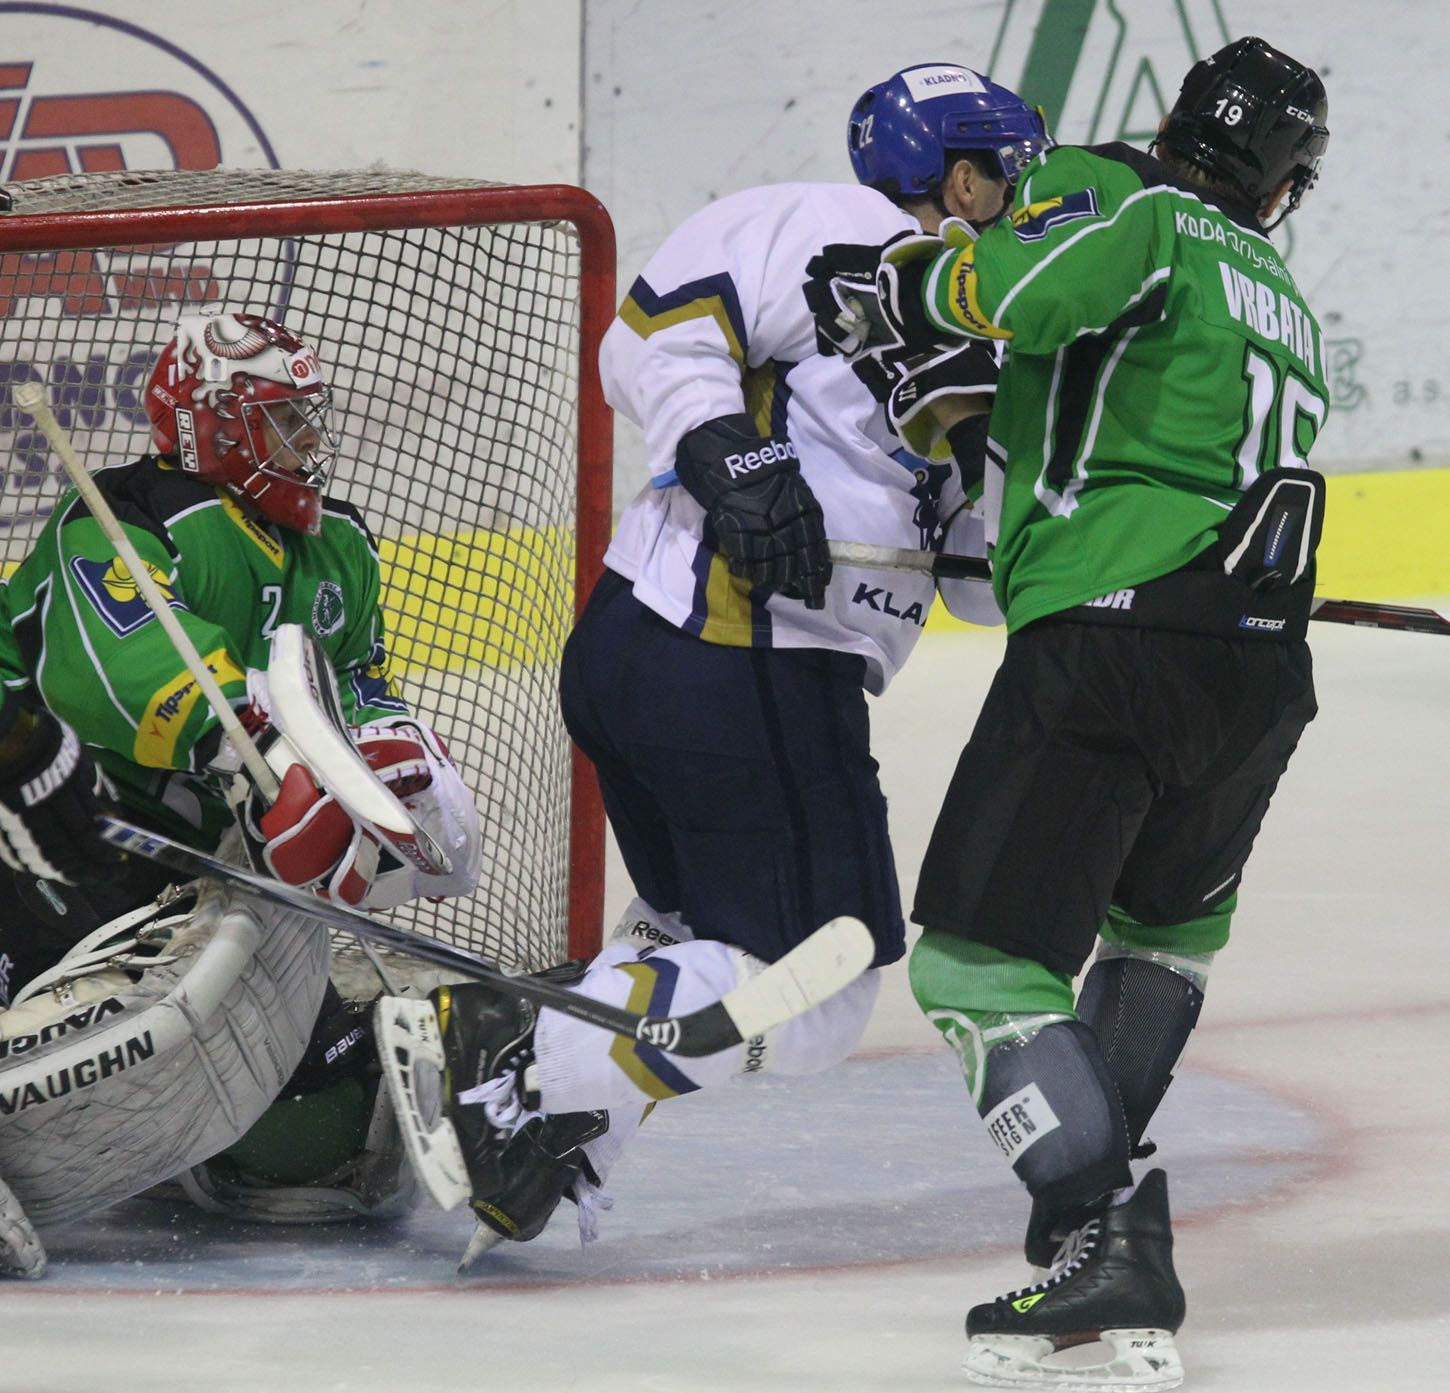 Mladoboleslavští hokejisté Vlastimil Lakosil (brankář) a David Vrbata se snaží bránit kladenského útočníka v přípravném utkání před sezónou 2012/13.